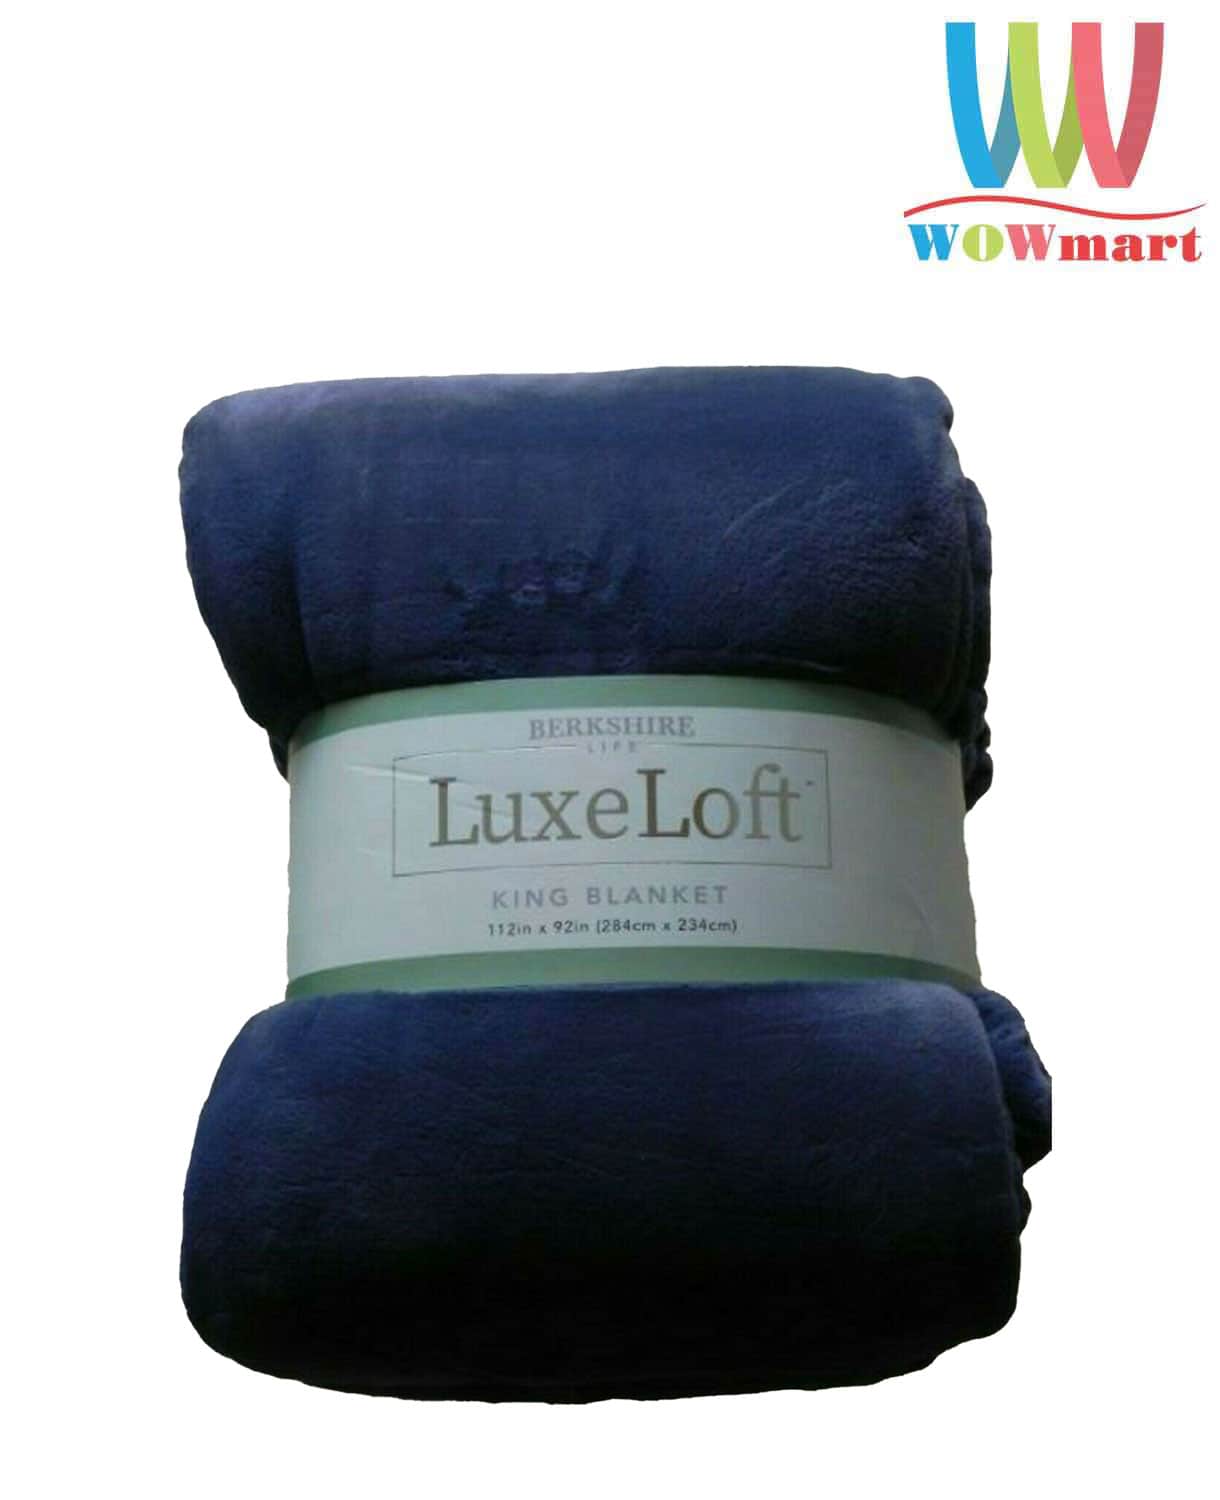 Chăn (mền) Berkshire LuxeLoft King Blanket 284cm x 234cm (Navy Blue) –  Wowmart VN | 100% hàng ngoại nhập